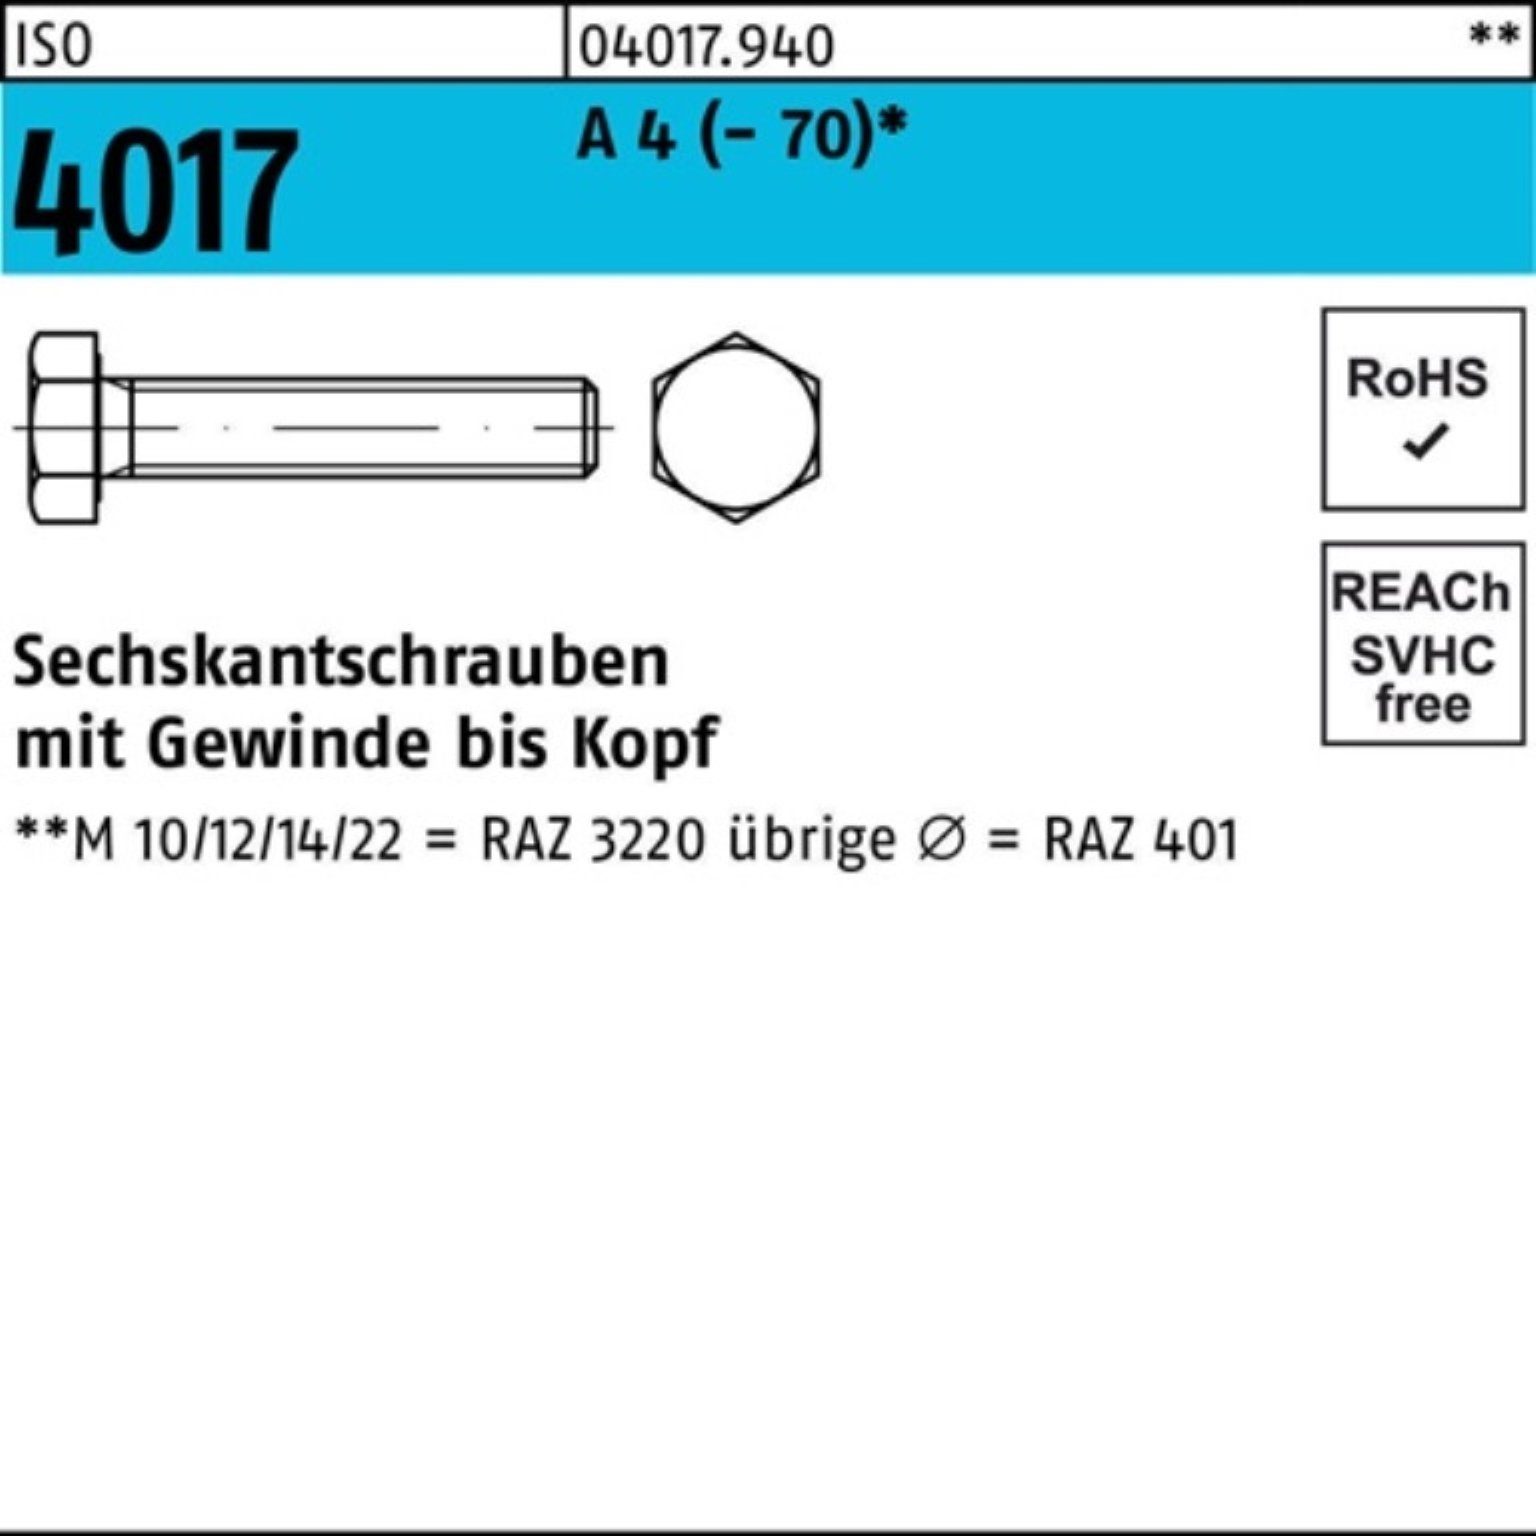 Bufab Sechskantschraube 100er Pack Sechskantschraube ISO 4017 VG M24x 200 A 4 (70) 1 Stück